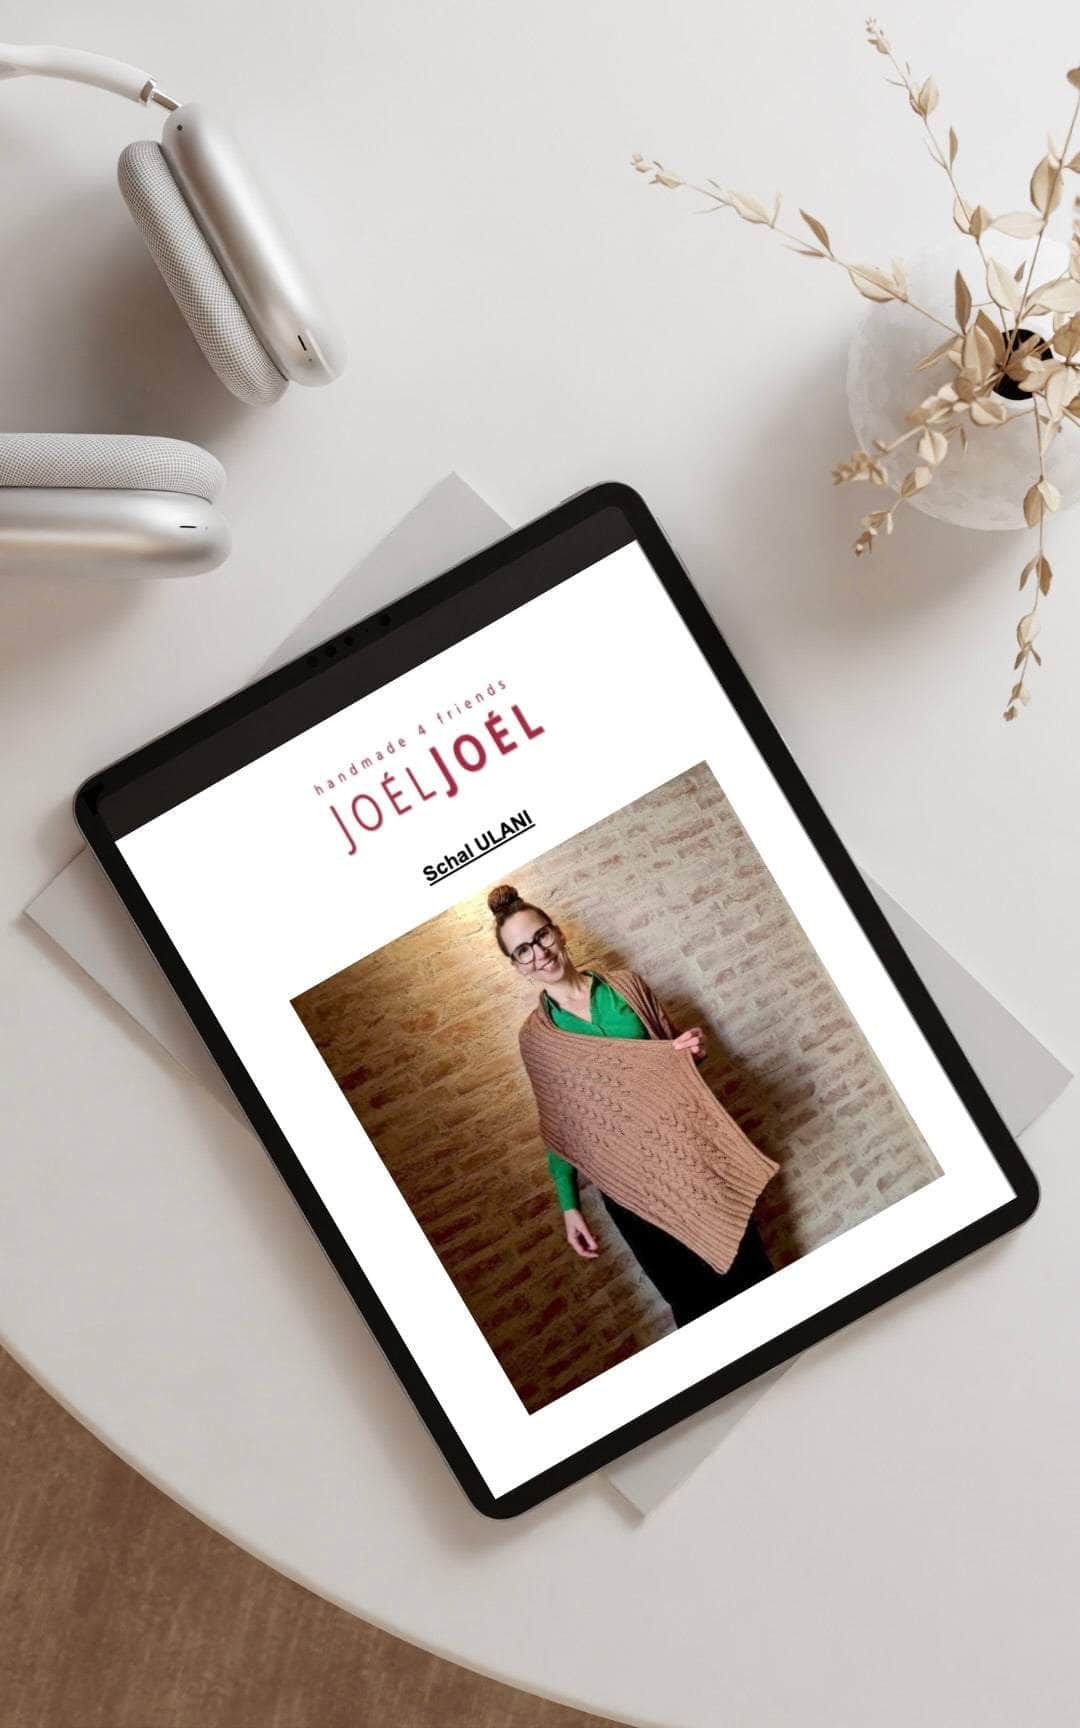 Ulani Schal - ANLEITUNG von JOÉL JOÉL jetzt online kaufen bei OONIQUE